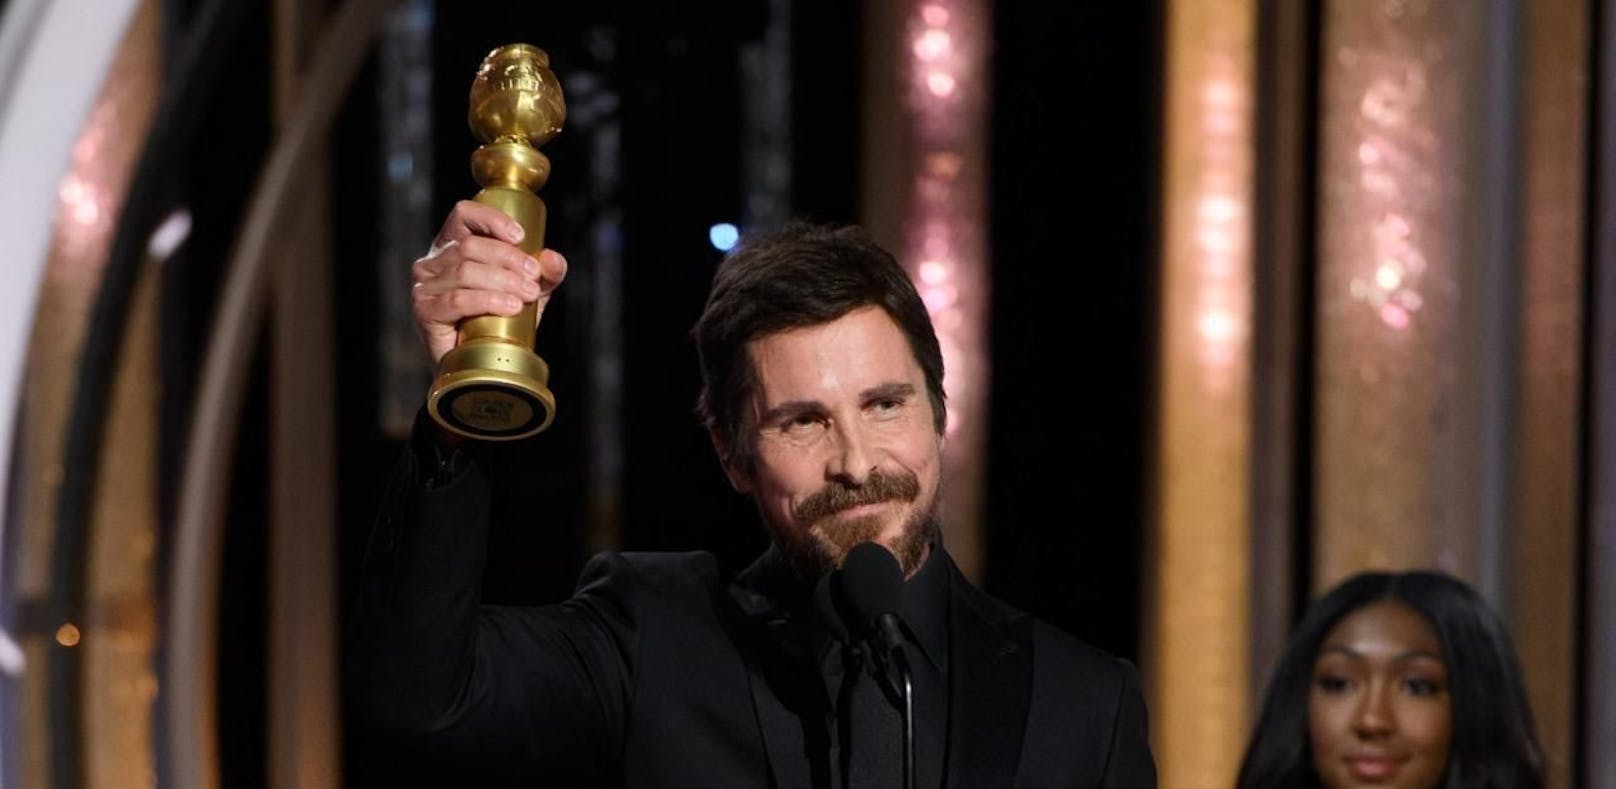 Christian Bale dankt Satan für Rollen-Inspiration